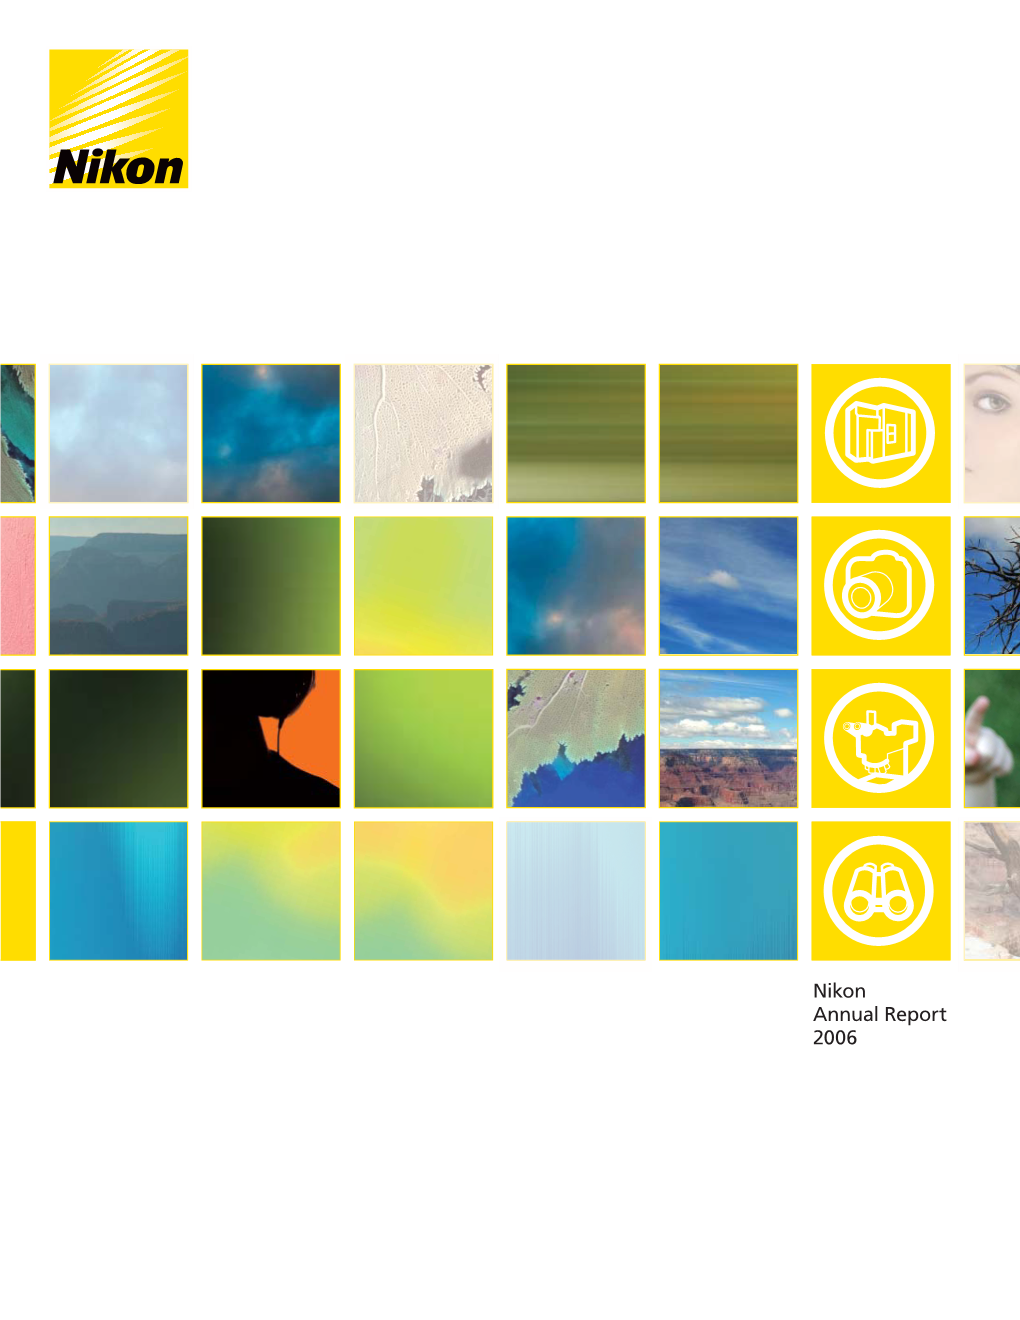 Nikon Annual Report 2006